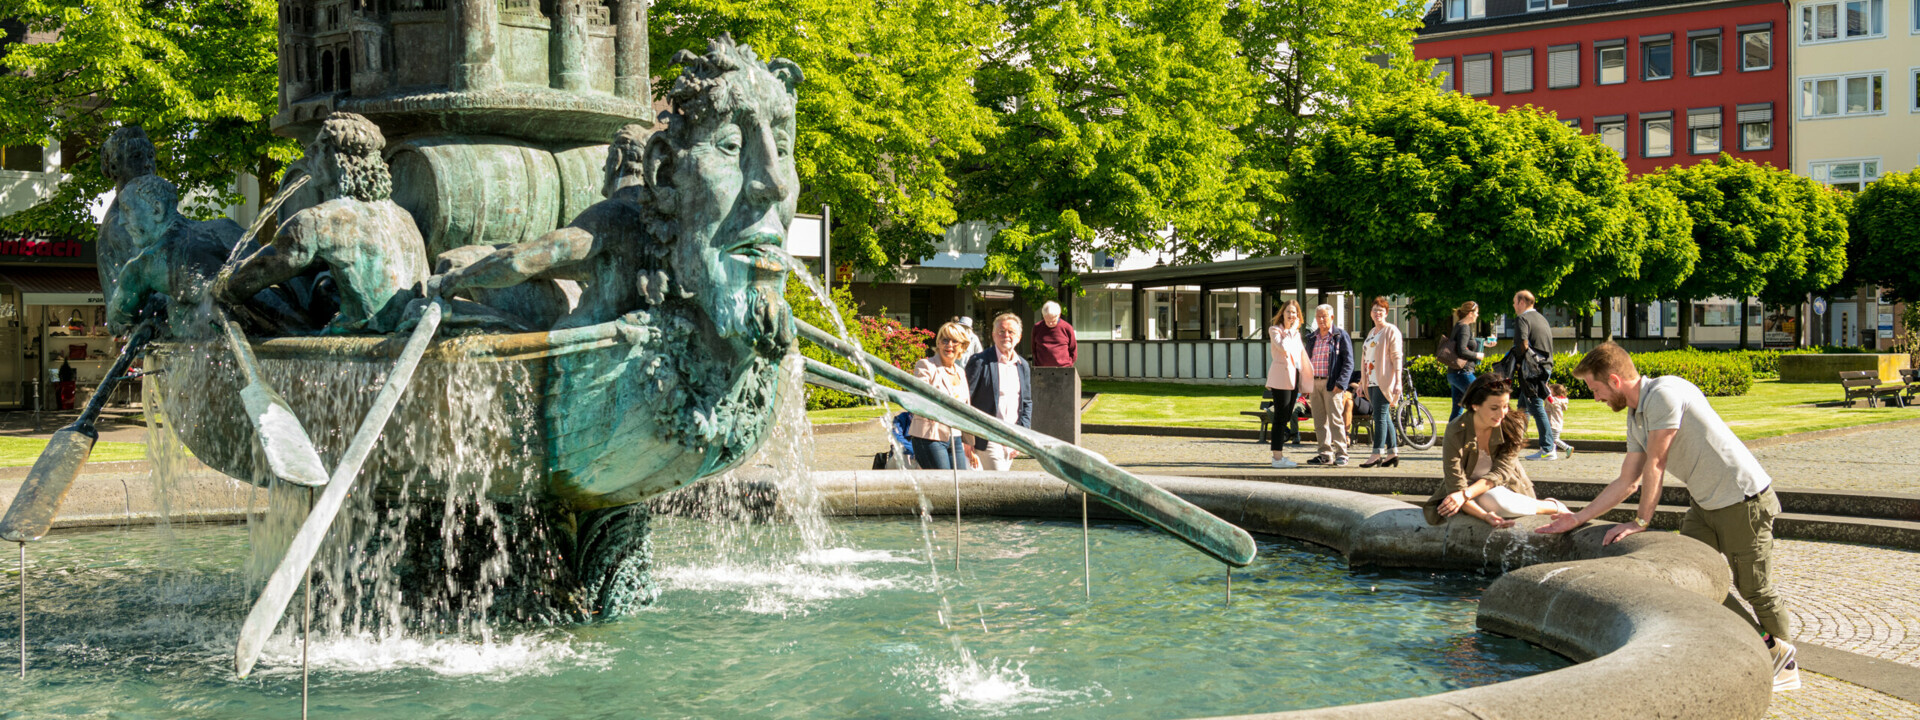 Brunnen "Historiensäule" auf dem Görresplatz in Koblenz umgeben von kleinen Menschengruppen ©Koblenz-Touristik GmbH, Dominik Ketz